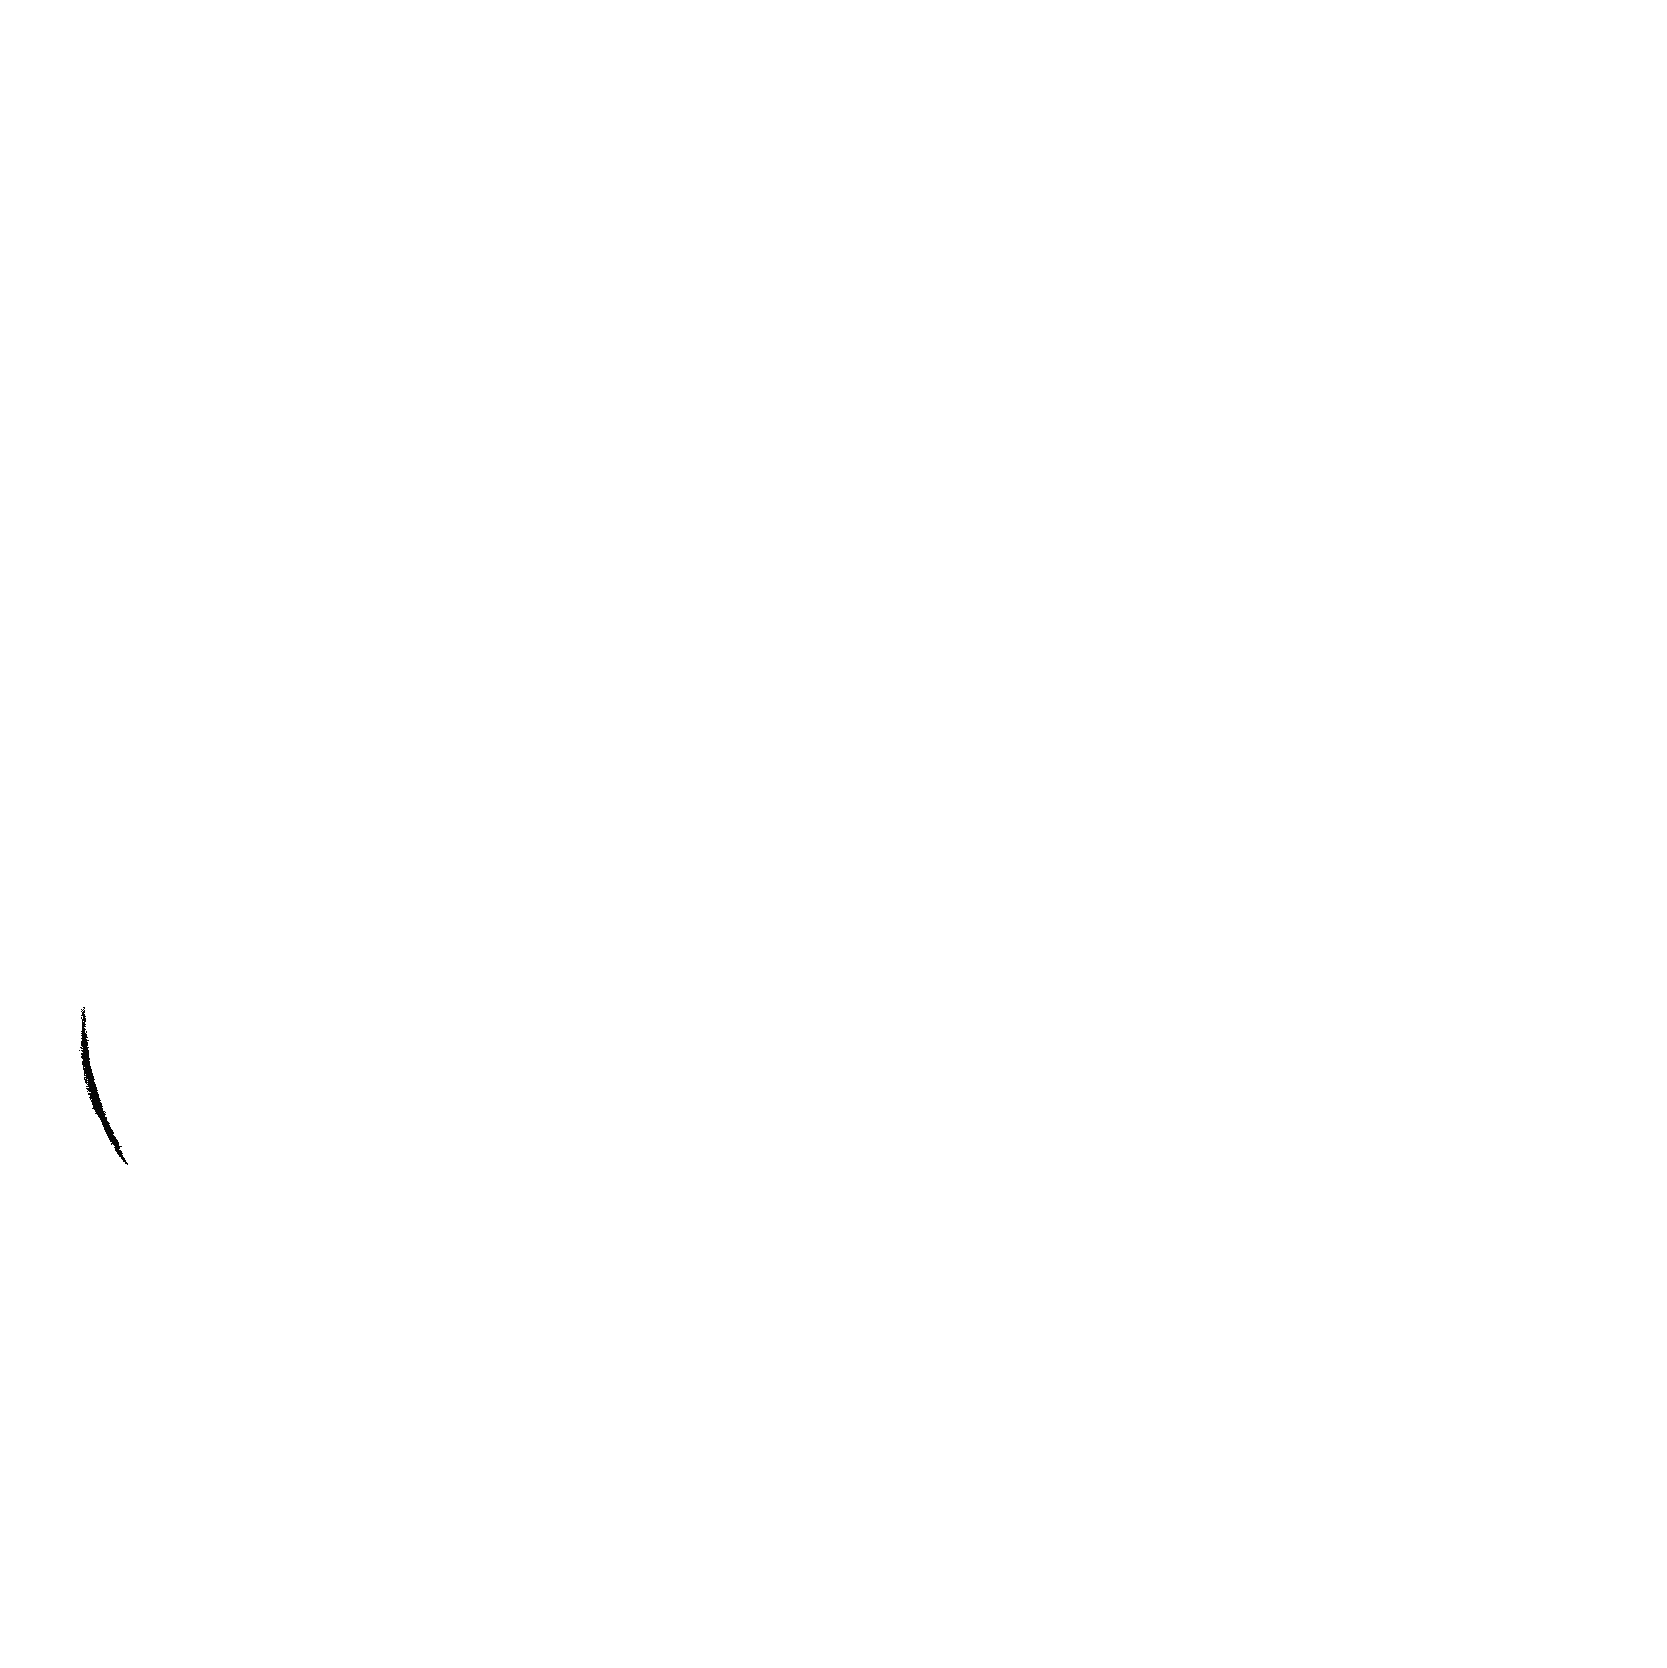 GIF of the sandviklee logo.